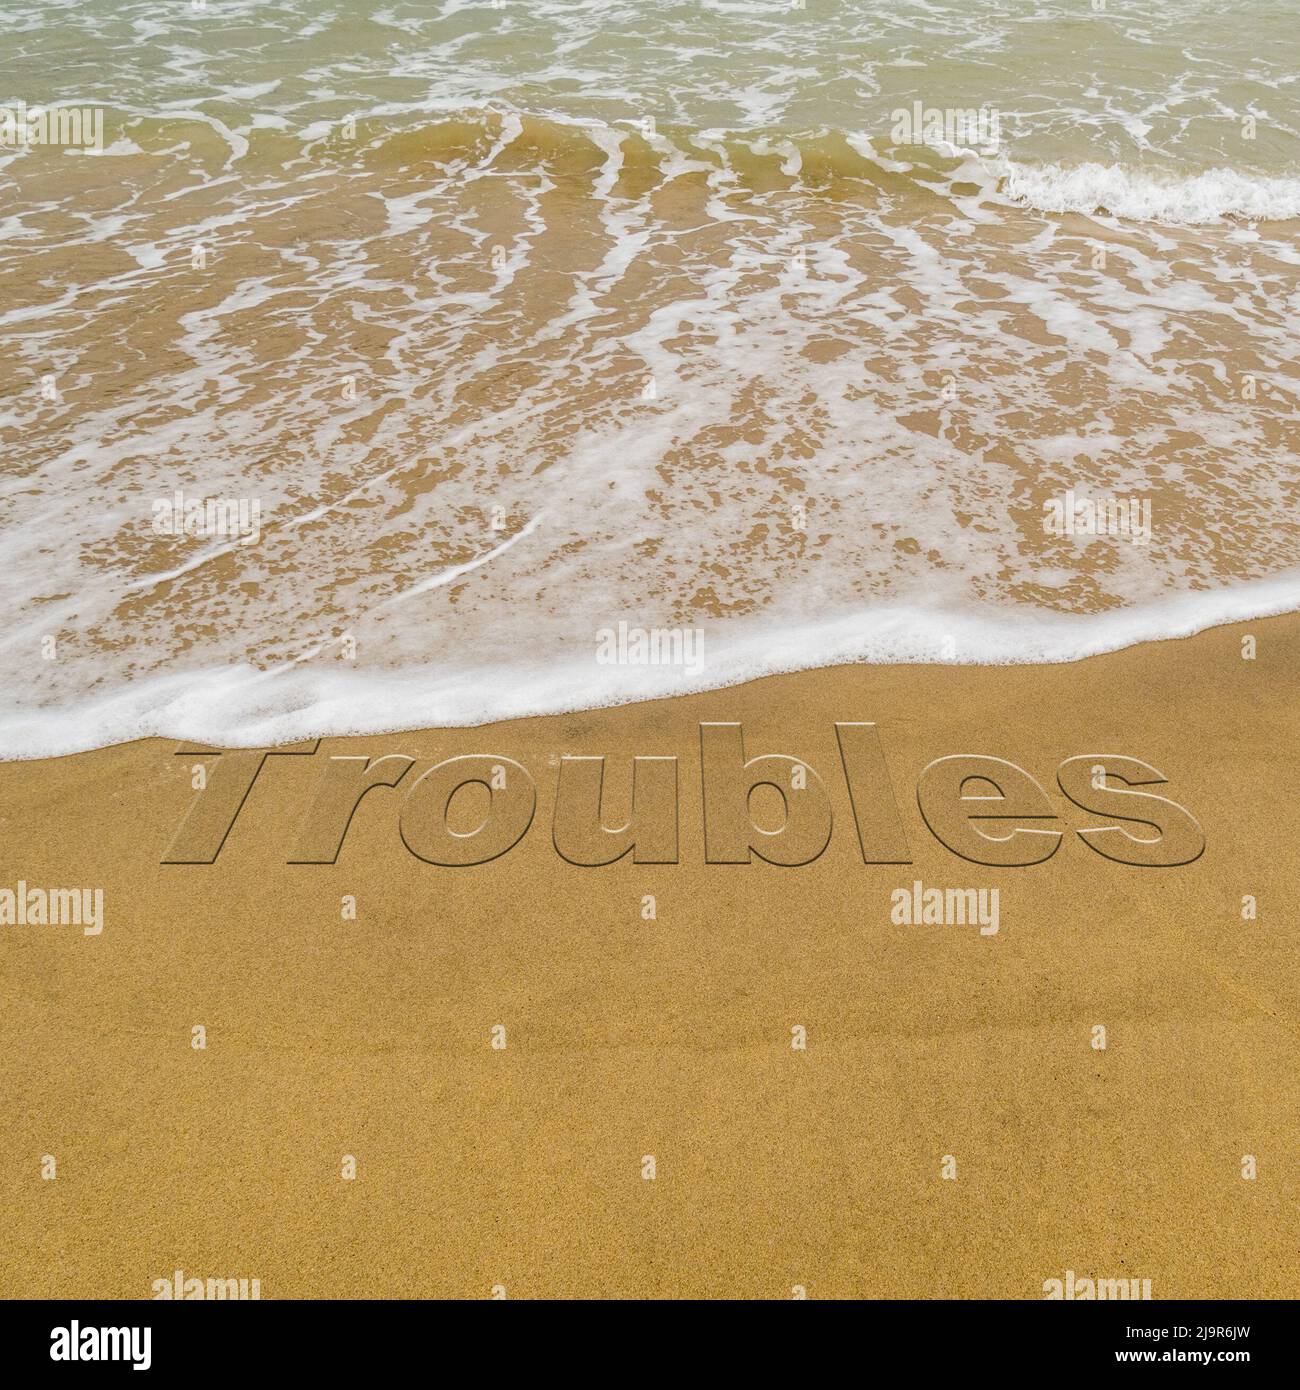 Konzeptbild - um Stress abzuwaschen, indem man einen Urlaub macht, während die Wellen an einem Sandstrand das Wort „Probleme“ wegwaschen. Stockfoto